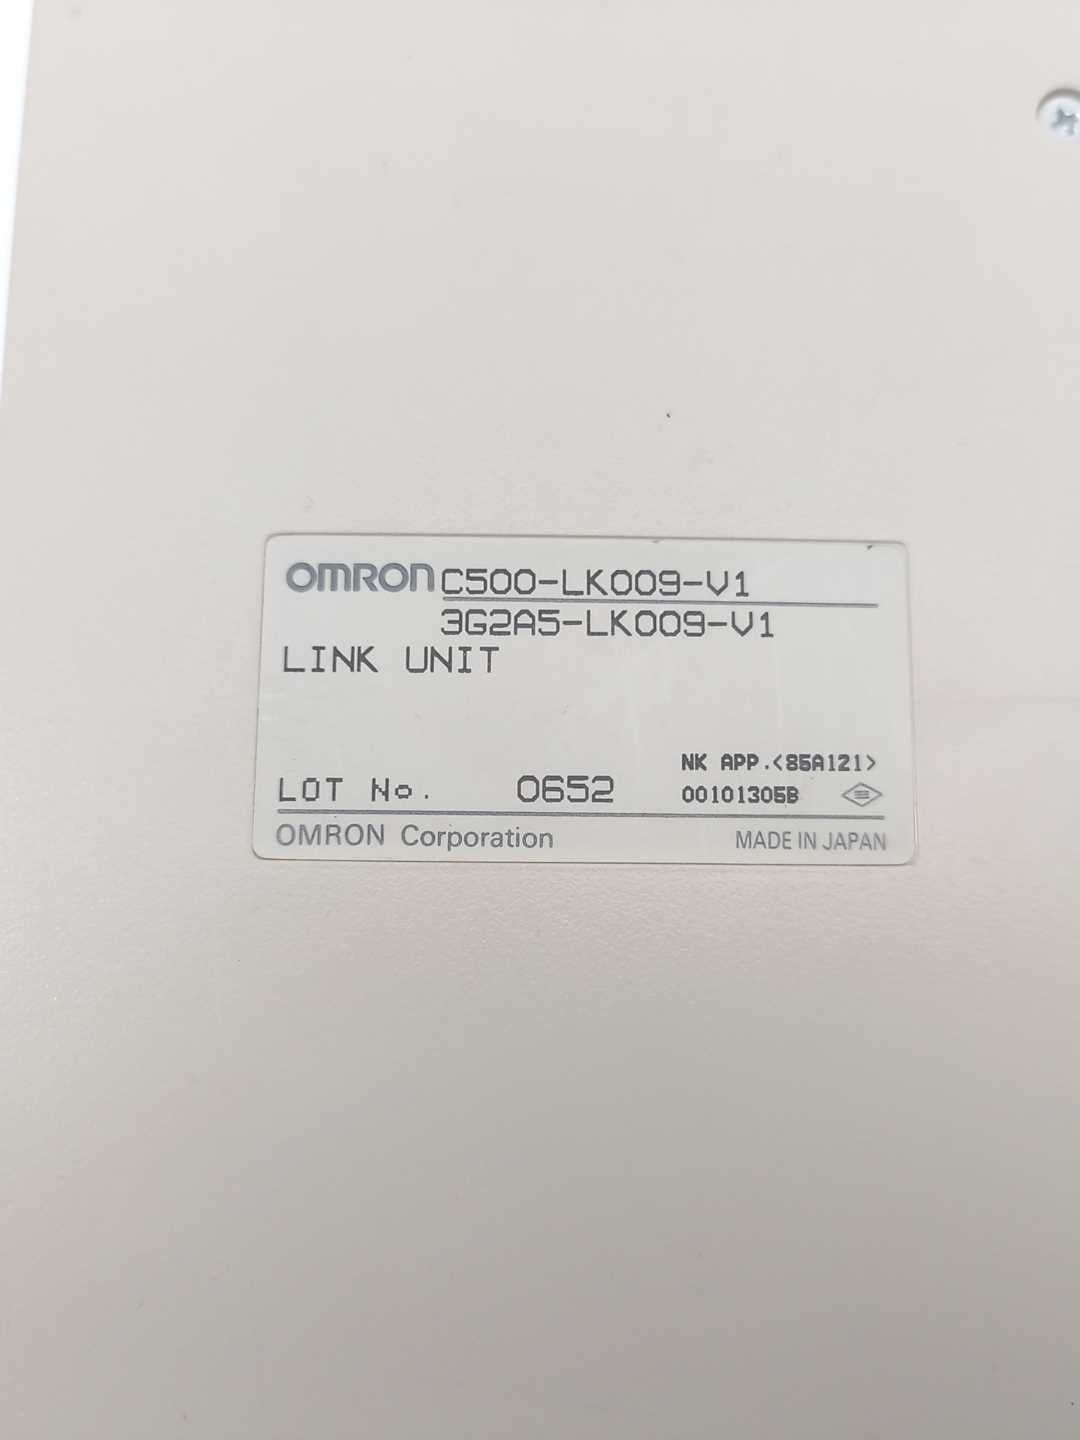 OMRON C500-LK009-V1 Link Unit